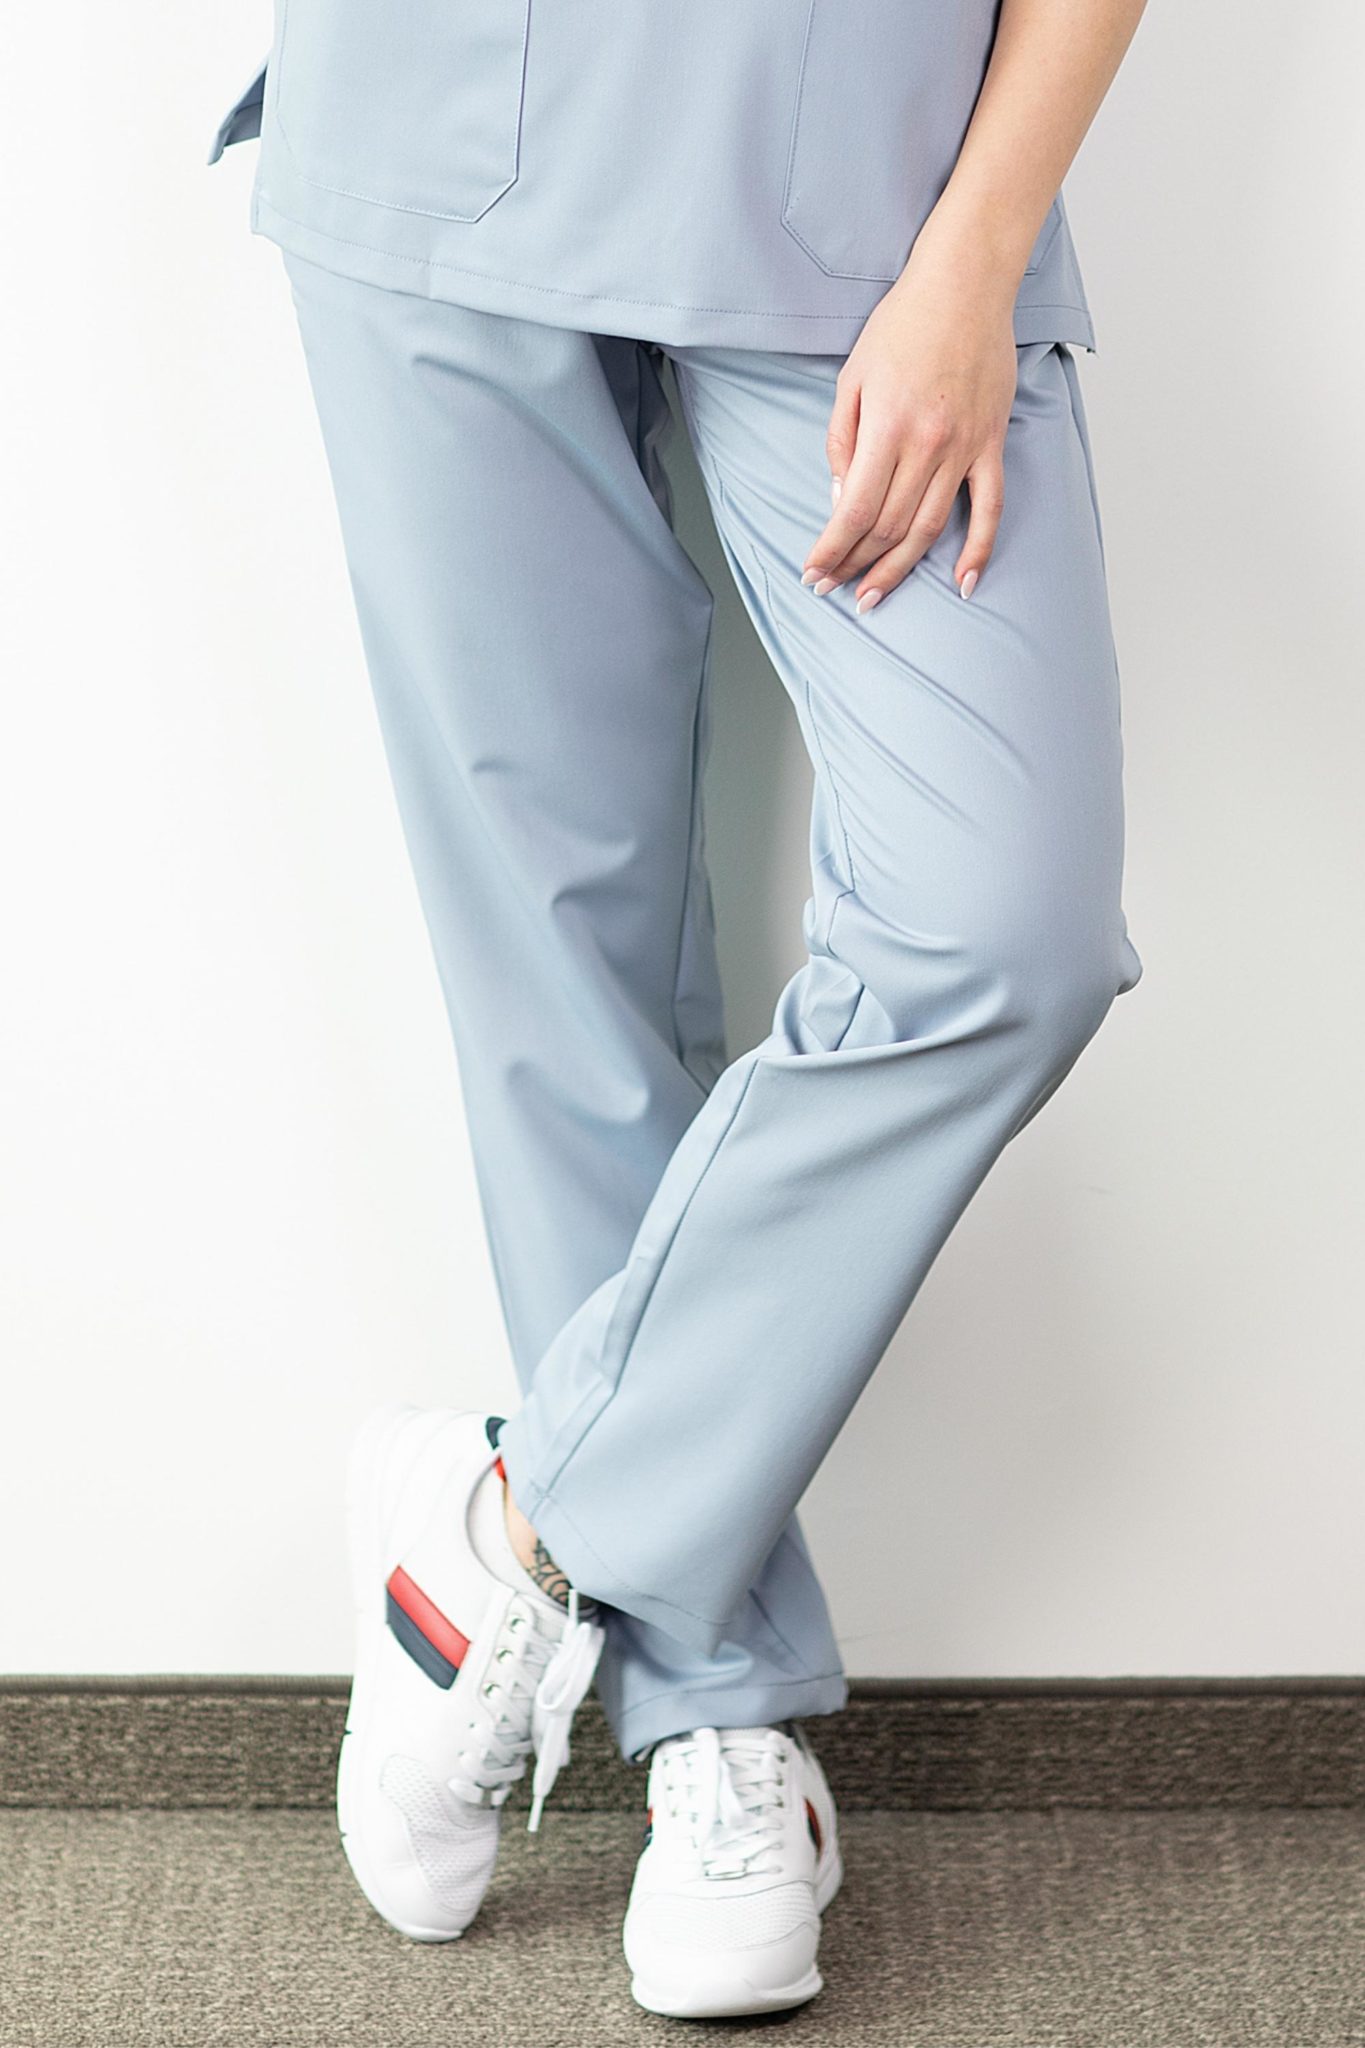 Pantalon médical - Bleu dragée, Confort - Femme - Médecina